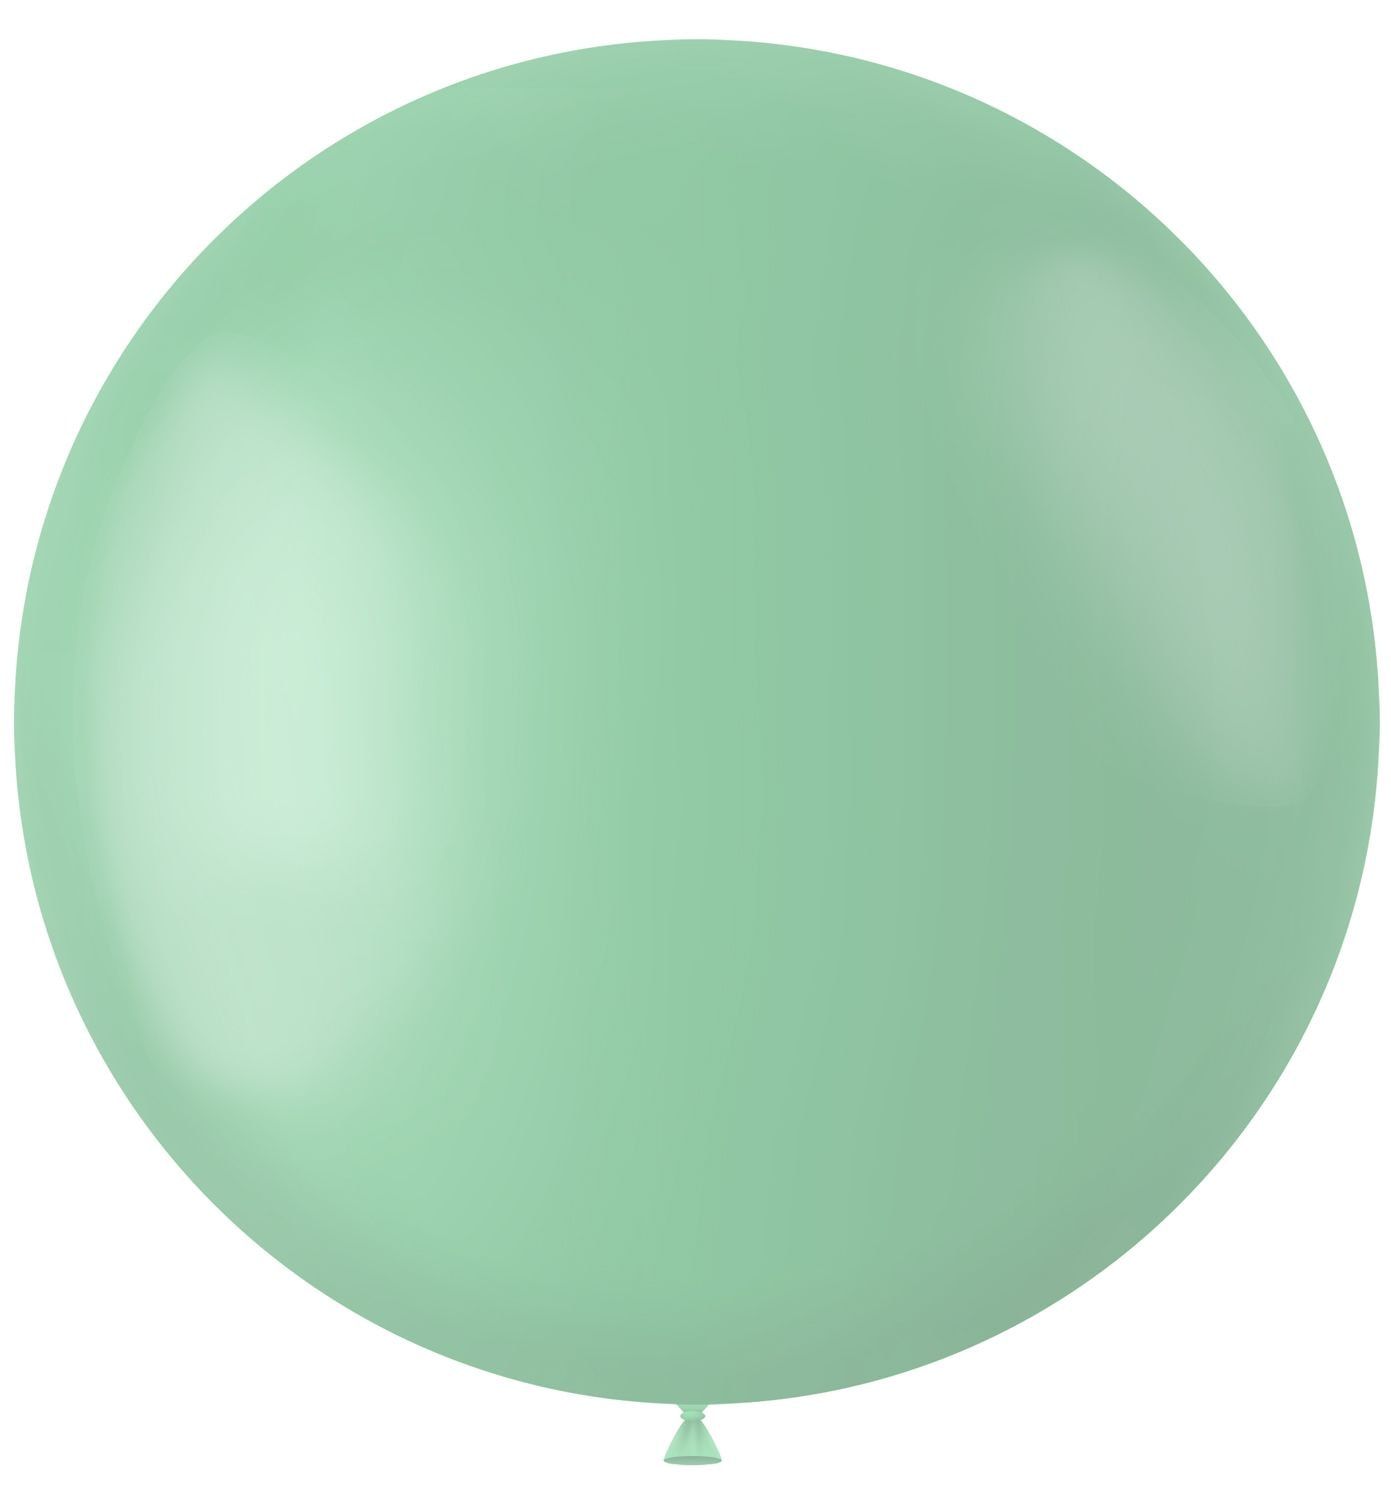 Pistache groen ballon matte kleur